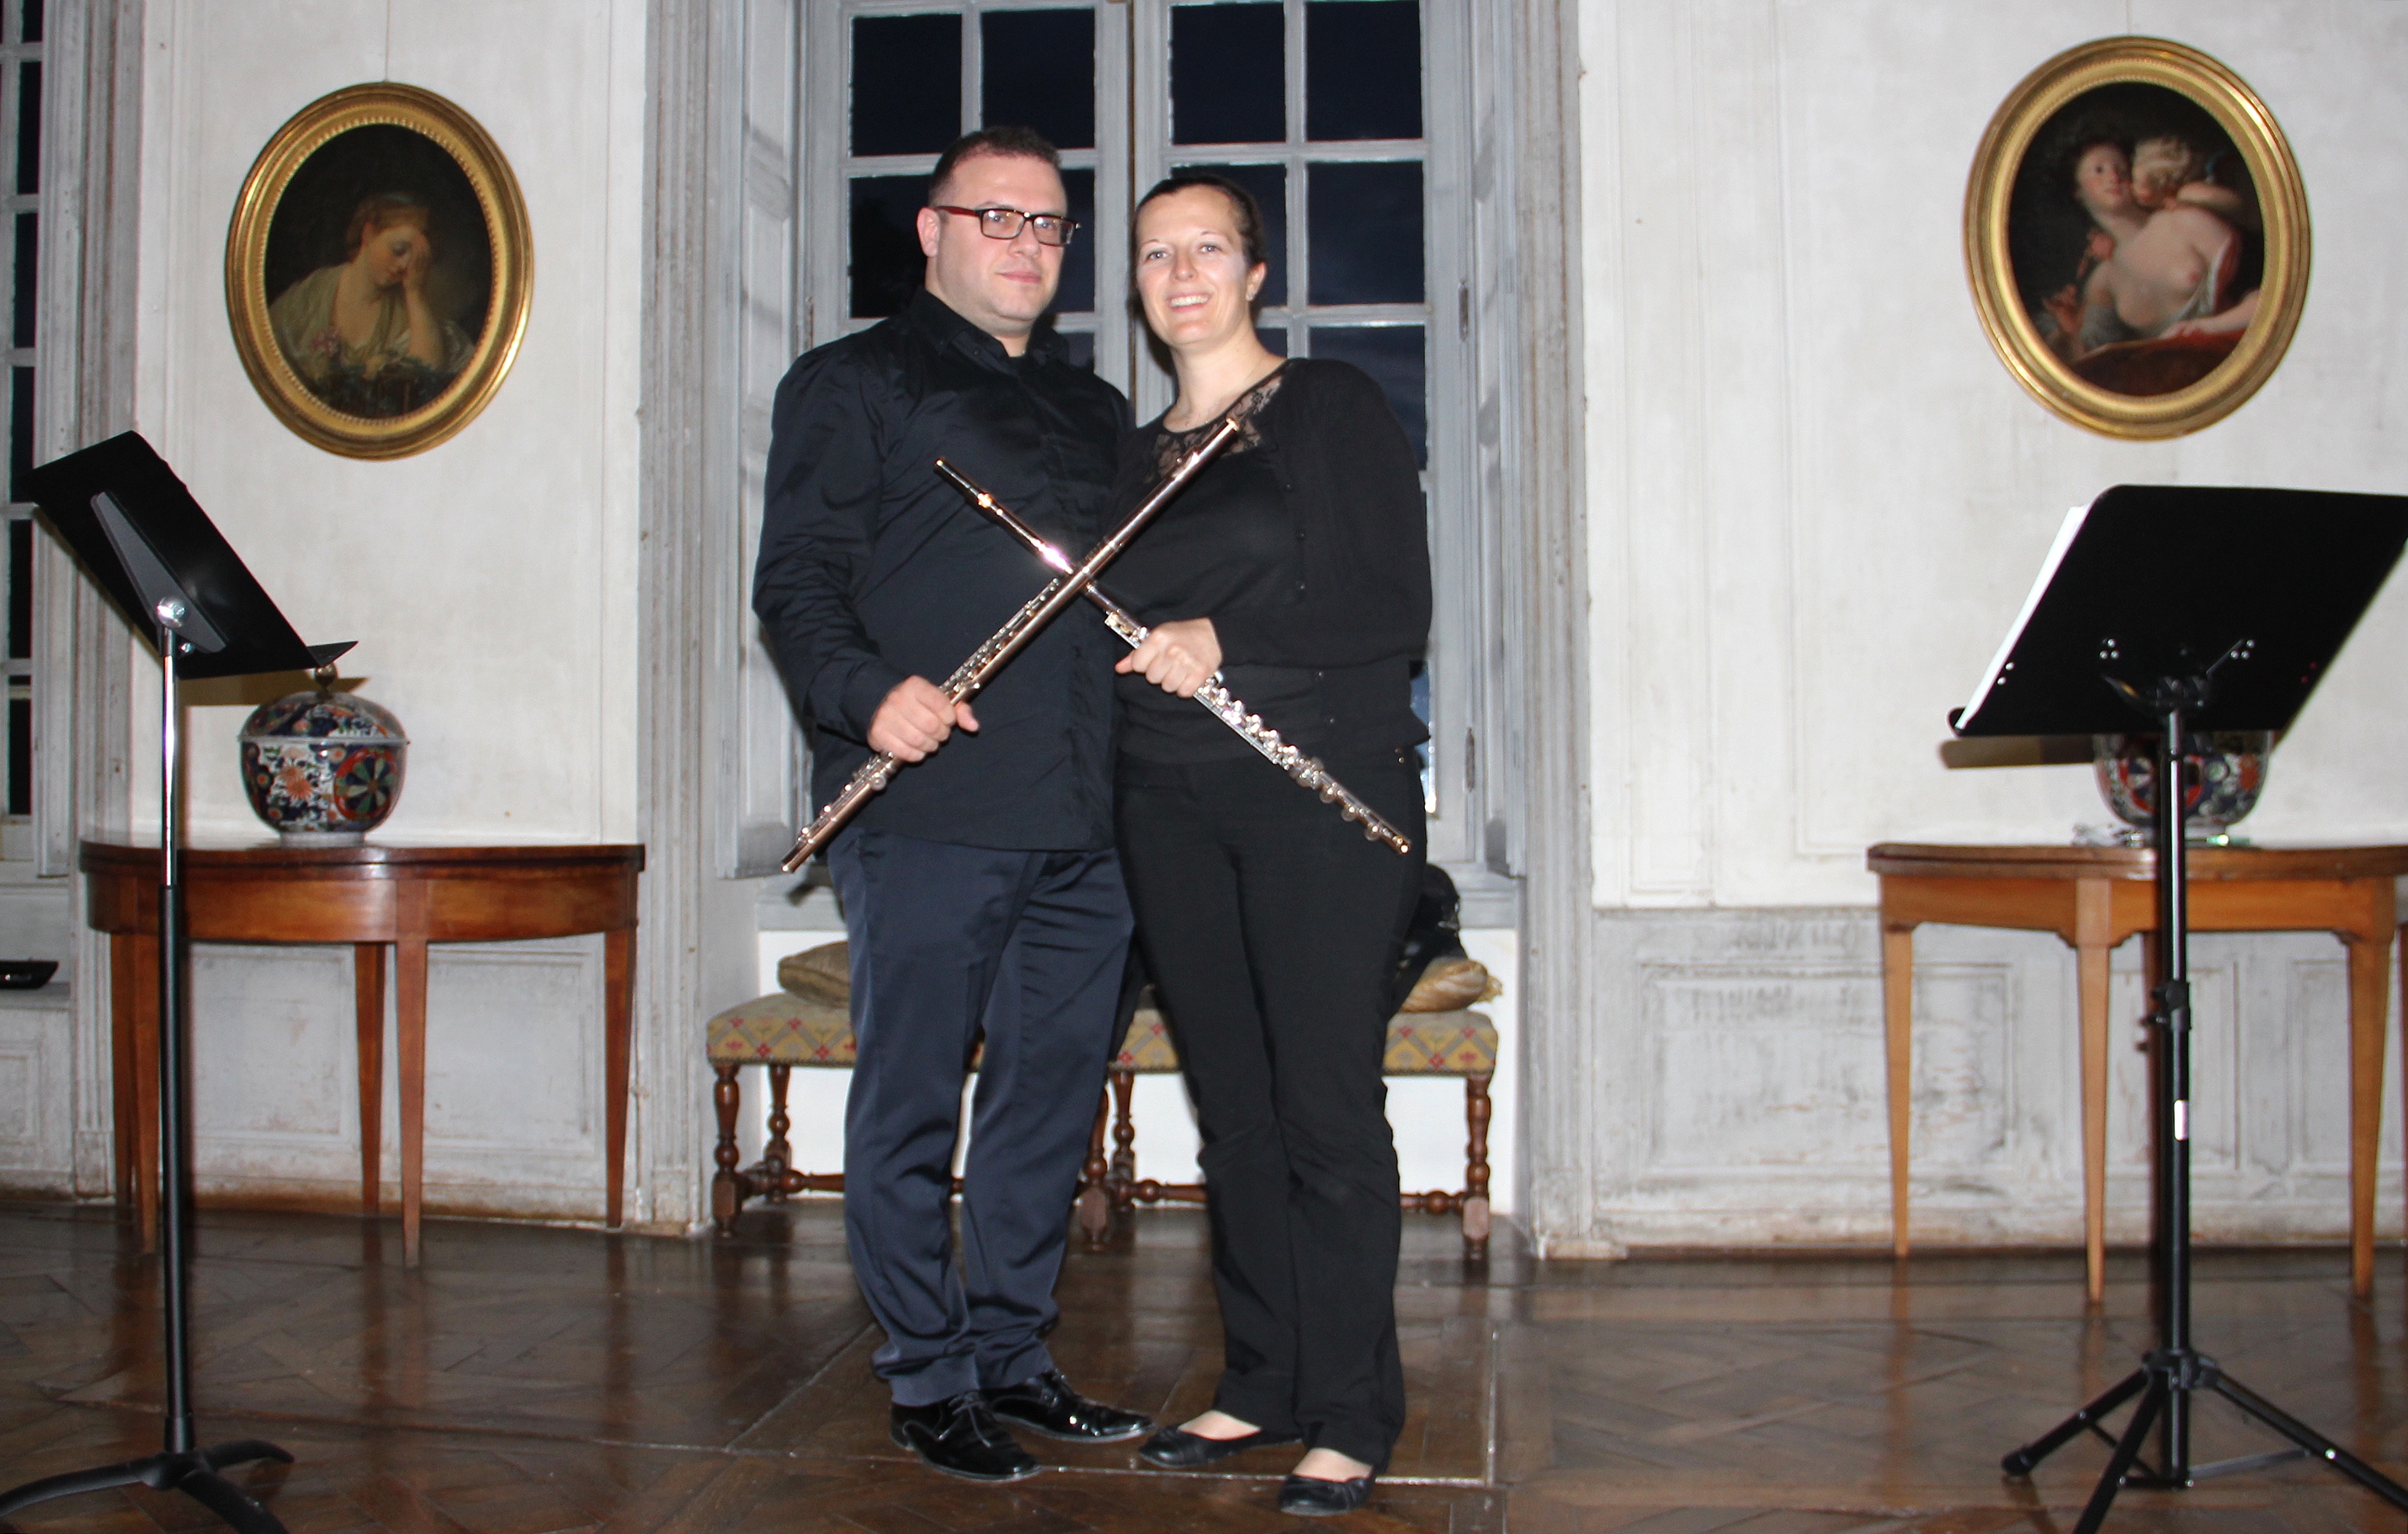 Le concert du duo Doppler dans le grand salon du château